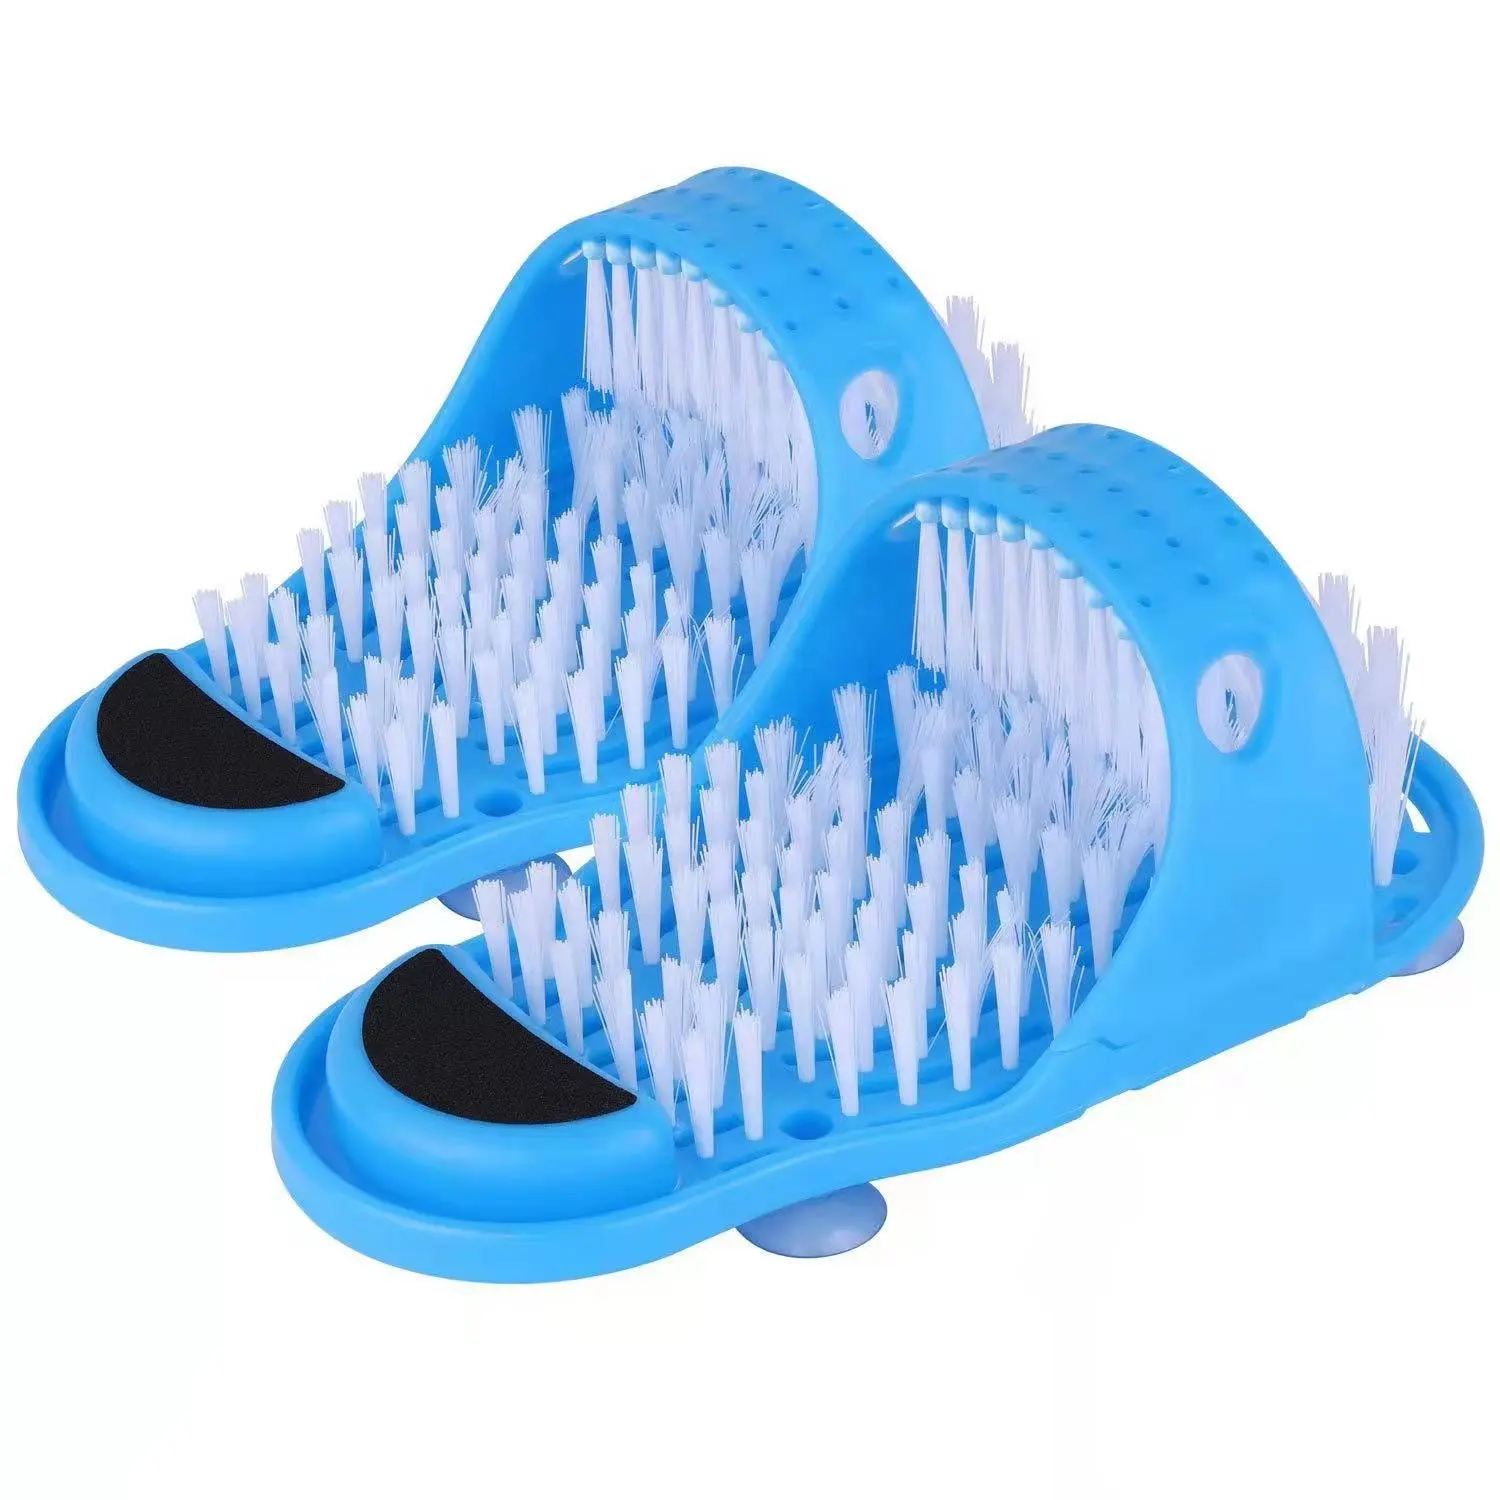 Großhandel TRP PVC/Holz Lustige Fuß wäscher Bürste Blaue Hausschuhe Massage gerät Dusche Clean Easy Feet Brush